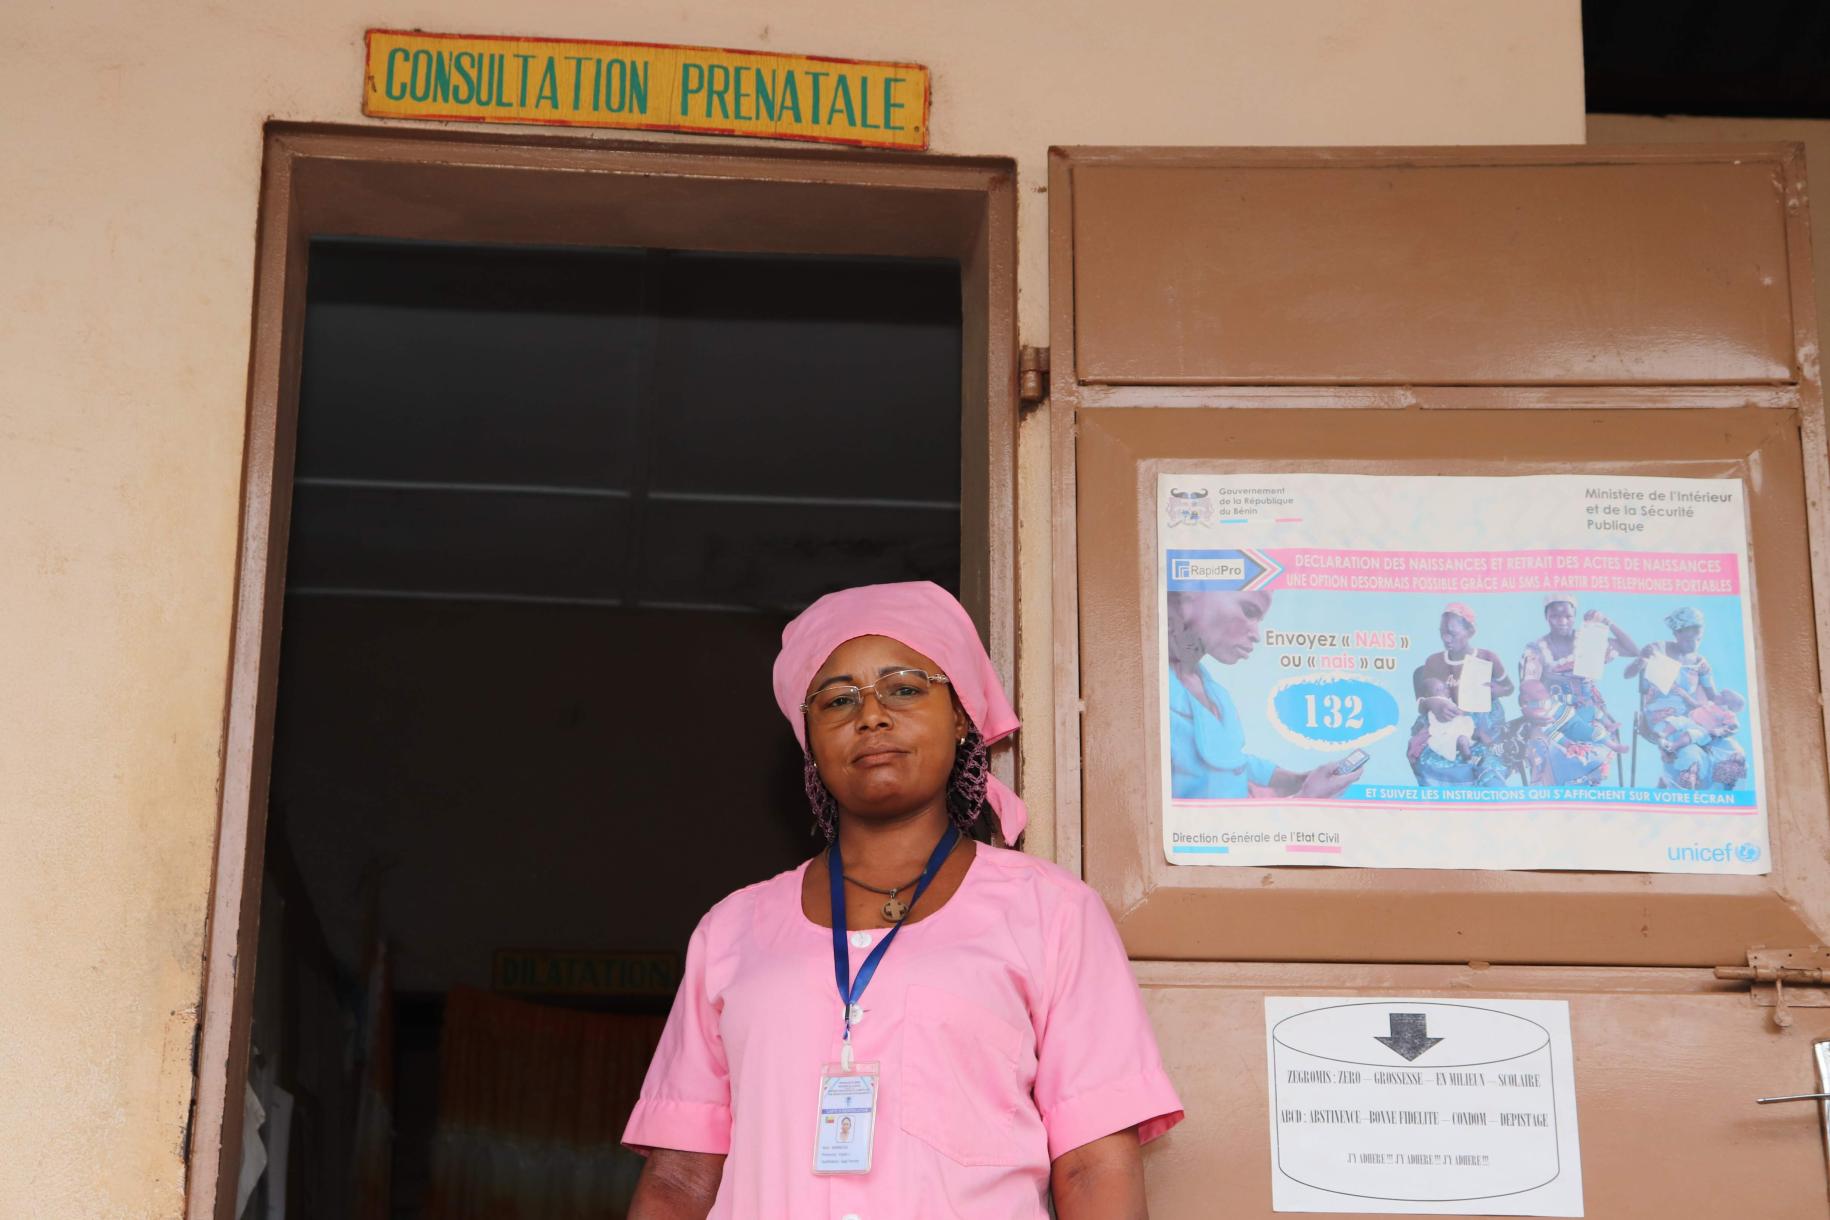 Una mujer con un uniforme rosa y una red que le cubre el cabello, está parada frente a una puerta de un centro de salud. Se aprecia un letrero sobre la puerta donde se indica que se realizan consultas prenatales.